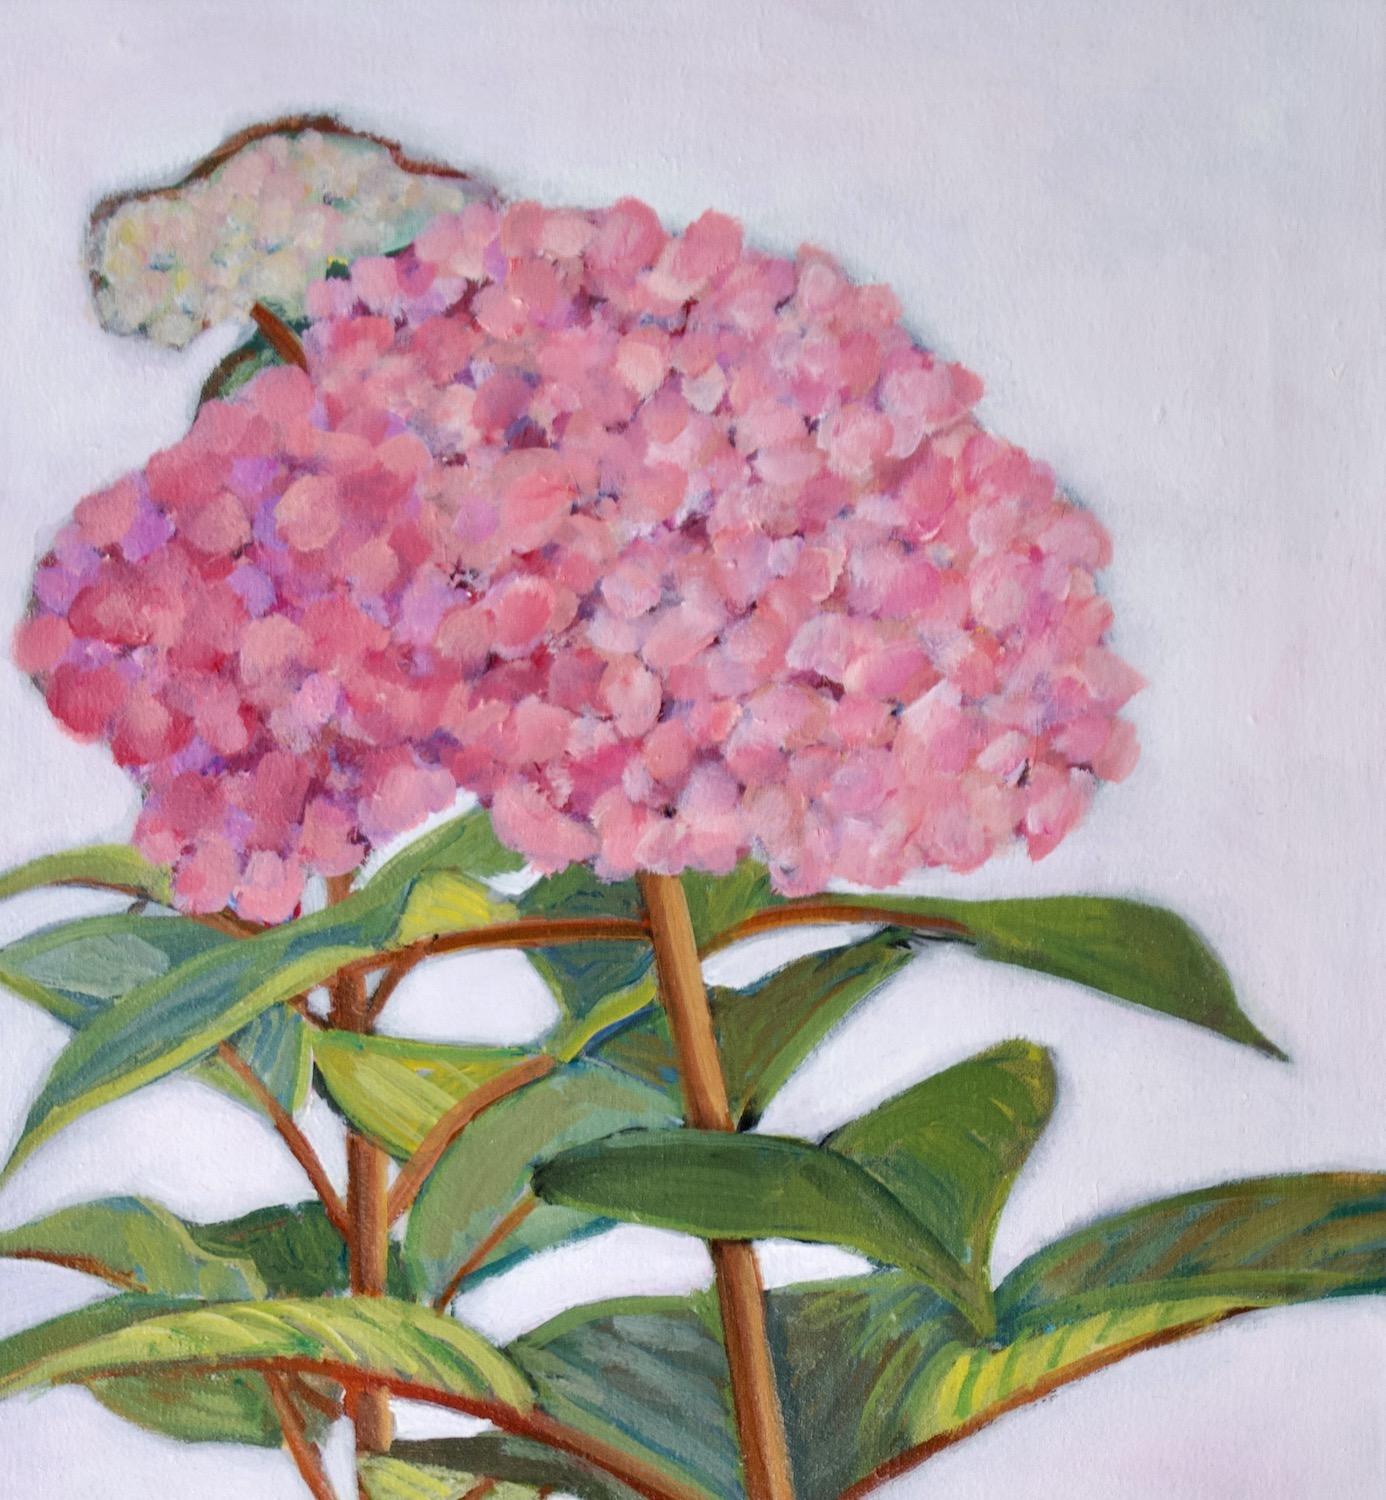 <p>Kommentare der Künstlerin<br>Die Künstlerin Carey Parks porträtiert blühende Hortensien aus ihrem Garten. Vor einem Hintergrund in zartem Lila leuchten die Blütenblätter in kräftigen Magenta- und Rosatönen, während die Blätter in leuchtenden